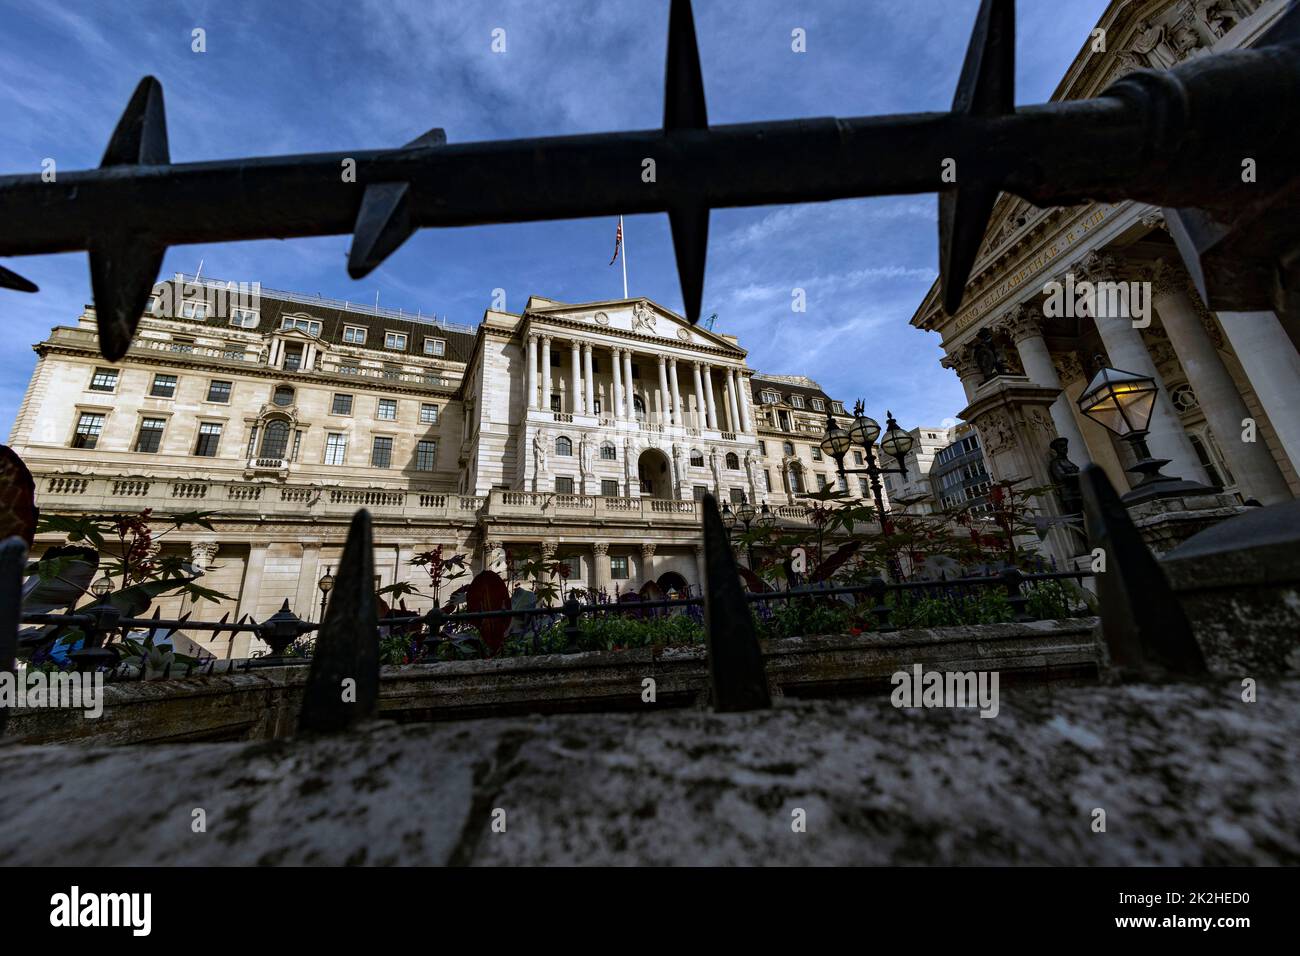 pic montre: Les taux de base sur le chemin de la hausse today22,9.22 Banque d'Angleterre dans la ville de Londres Photo de Gavin Rodgers/ Pixel8000 Banque D'Images